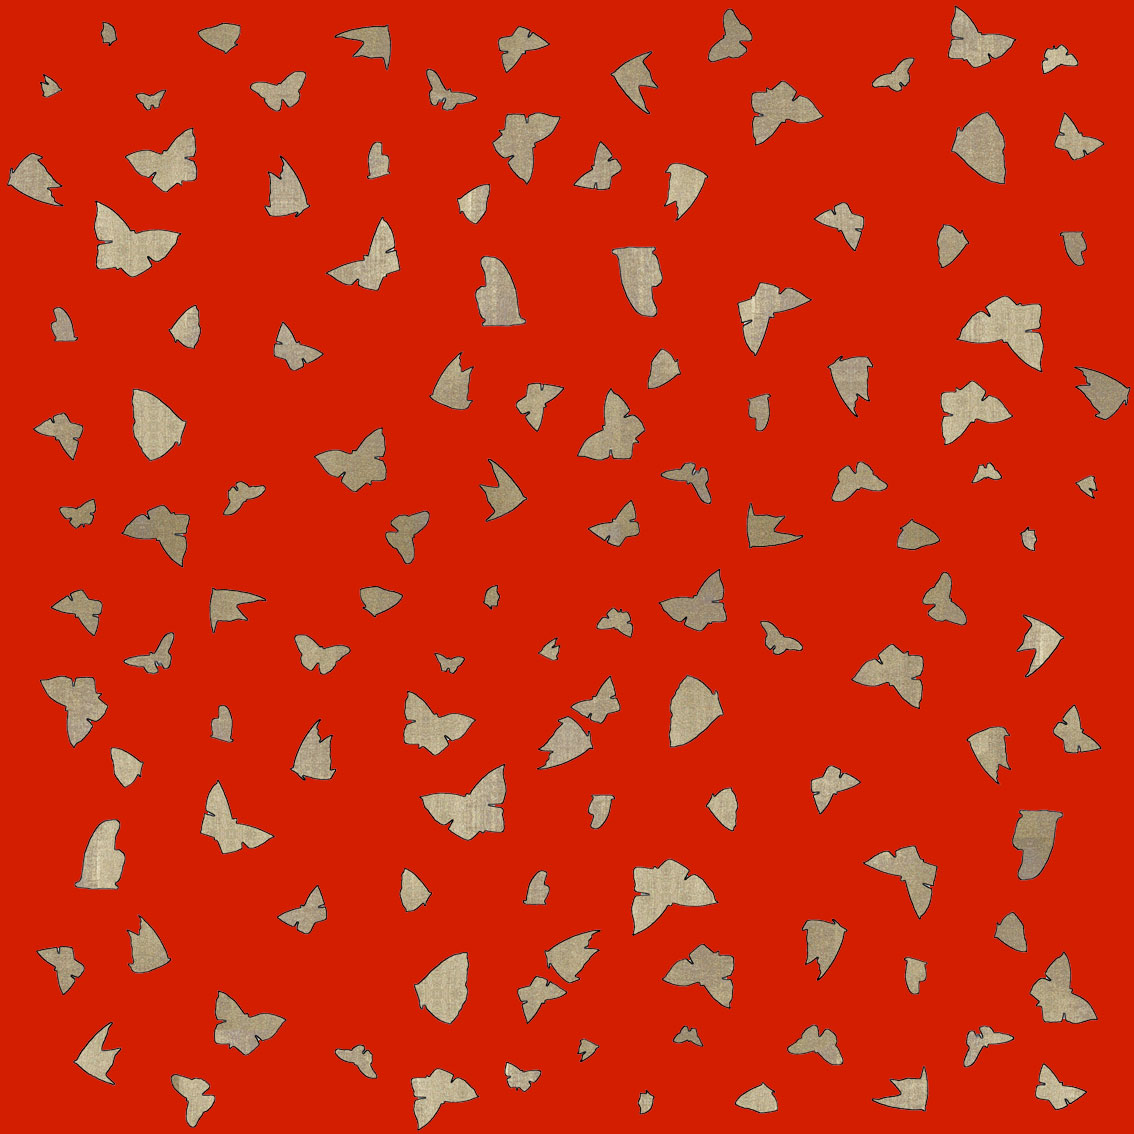 Golden Butterflies on Chinese Red Papillon-lépidoptère-sphynx-aurore-bombyx-paon-du-jour-monarque Thierry Bisch artiste peintre contemporain animaux tableau art décoration biodiversité conservation 